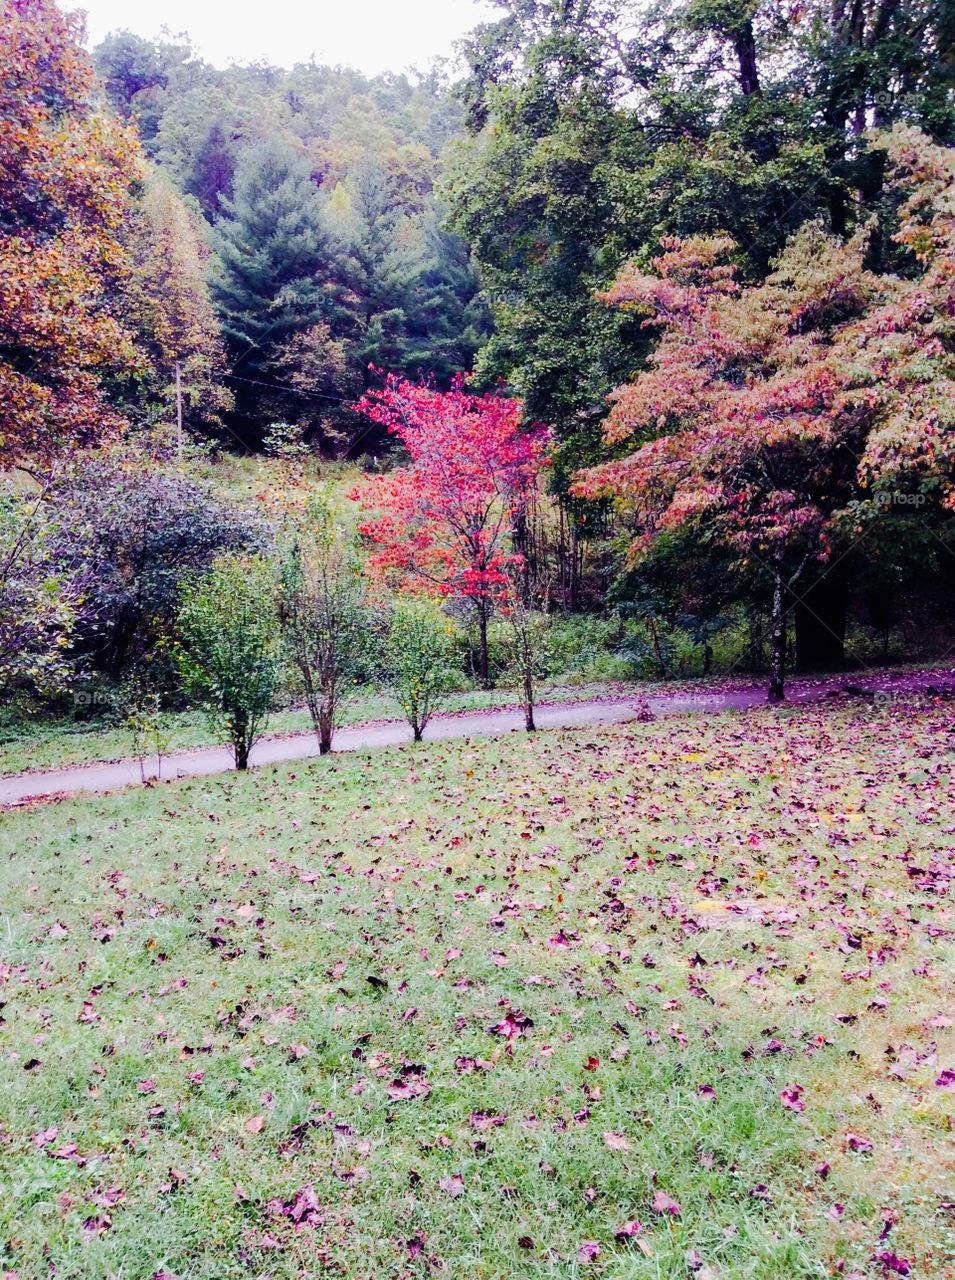 Beautiful fall colors!!!